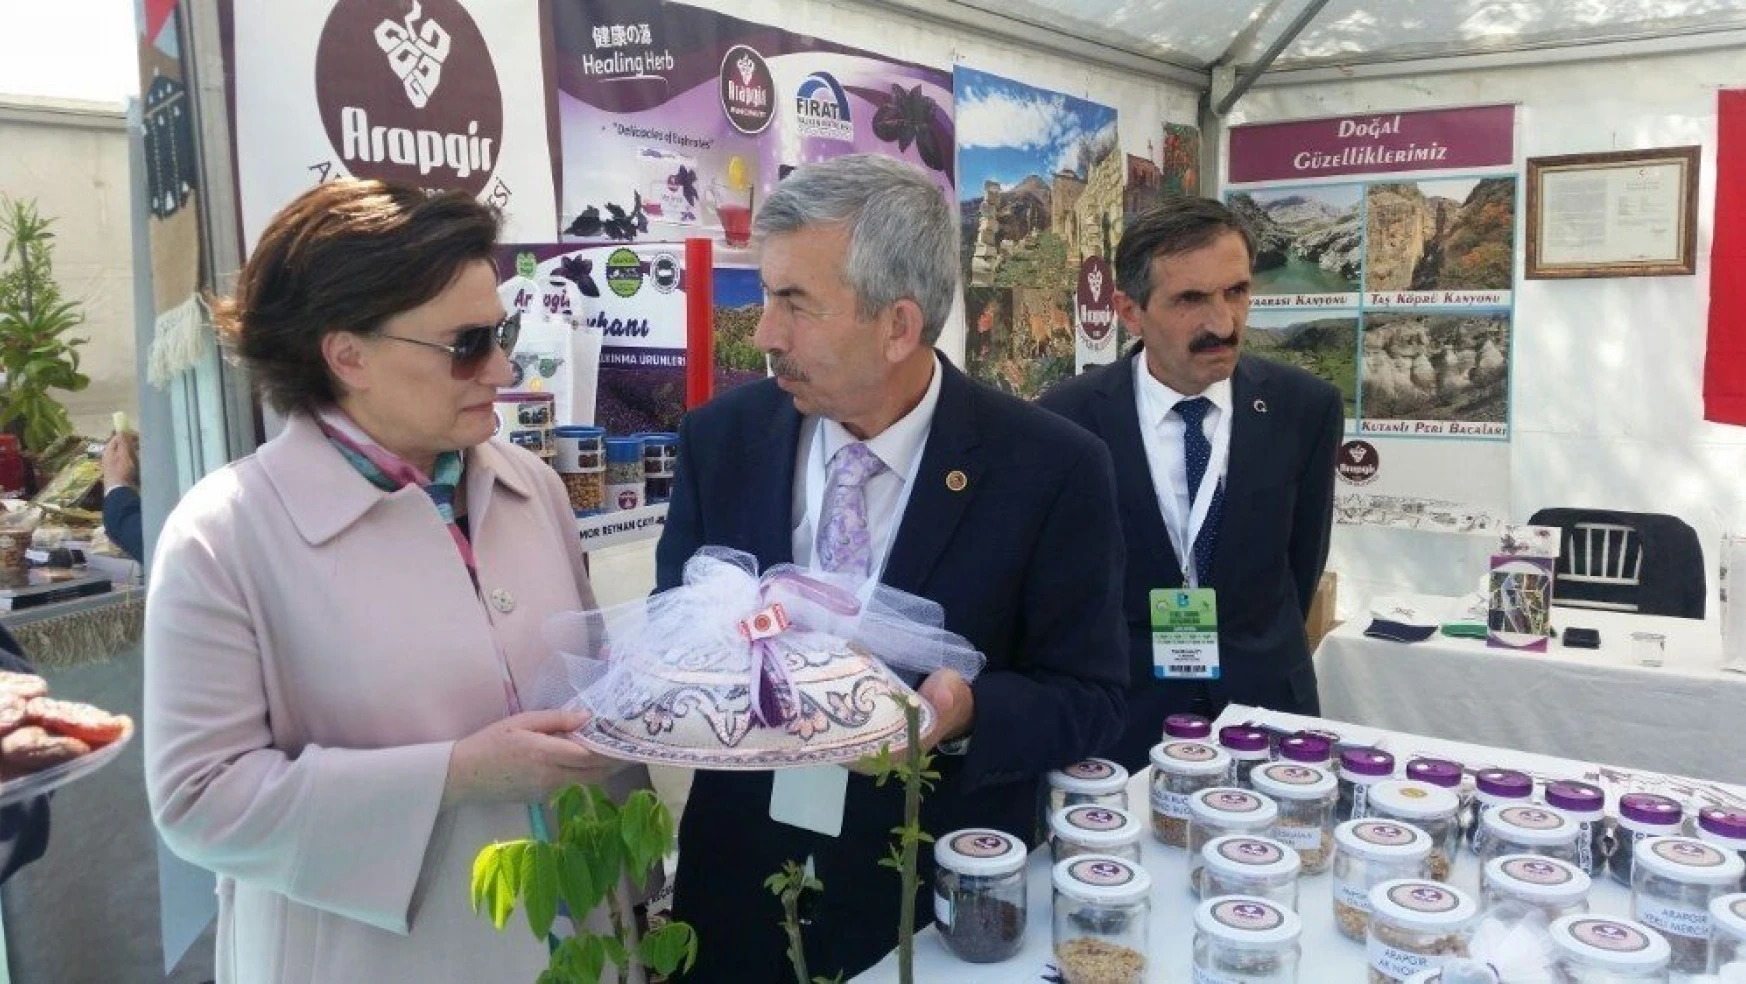 Emine Erdoğan Arapgir standını ziyaret etti